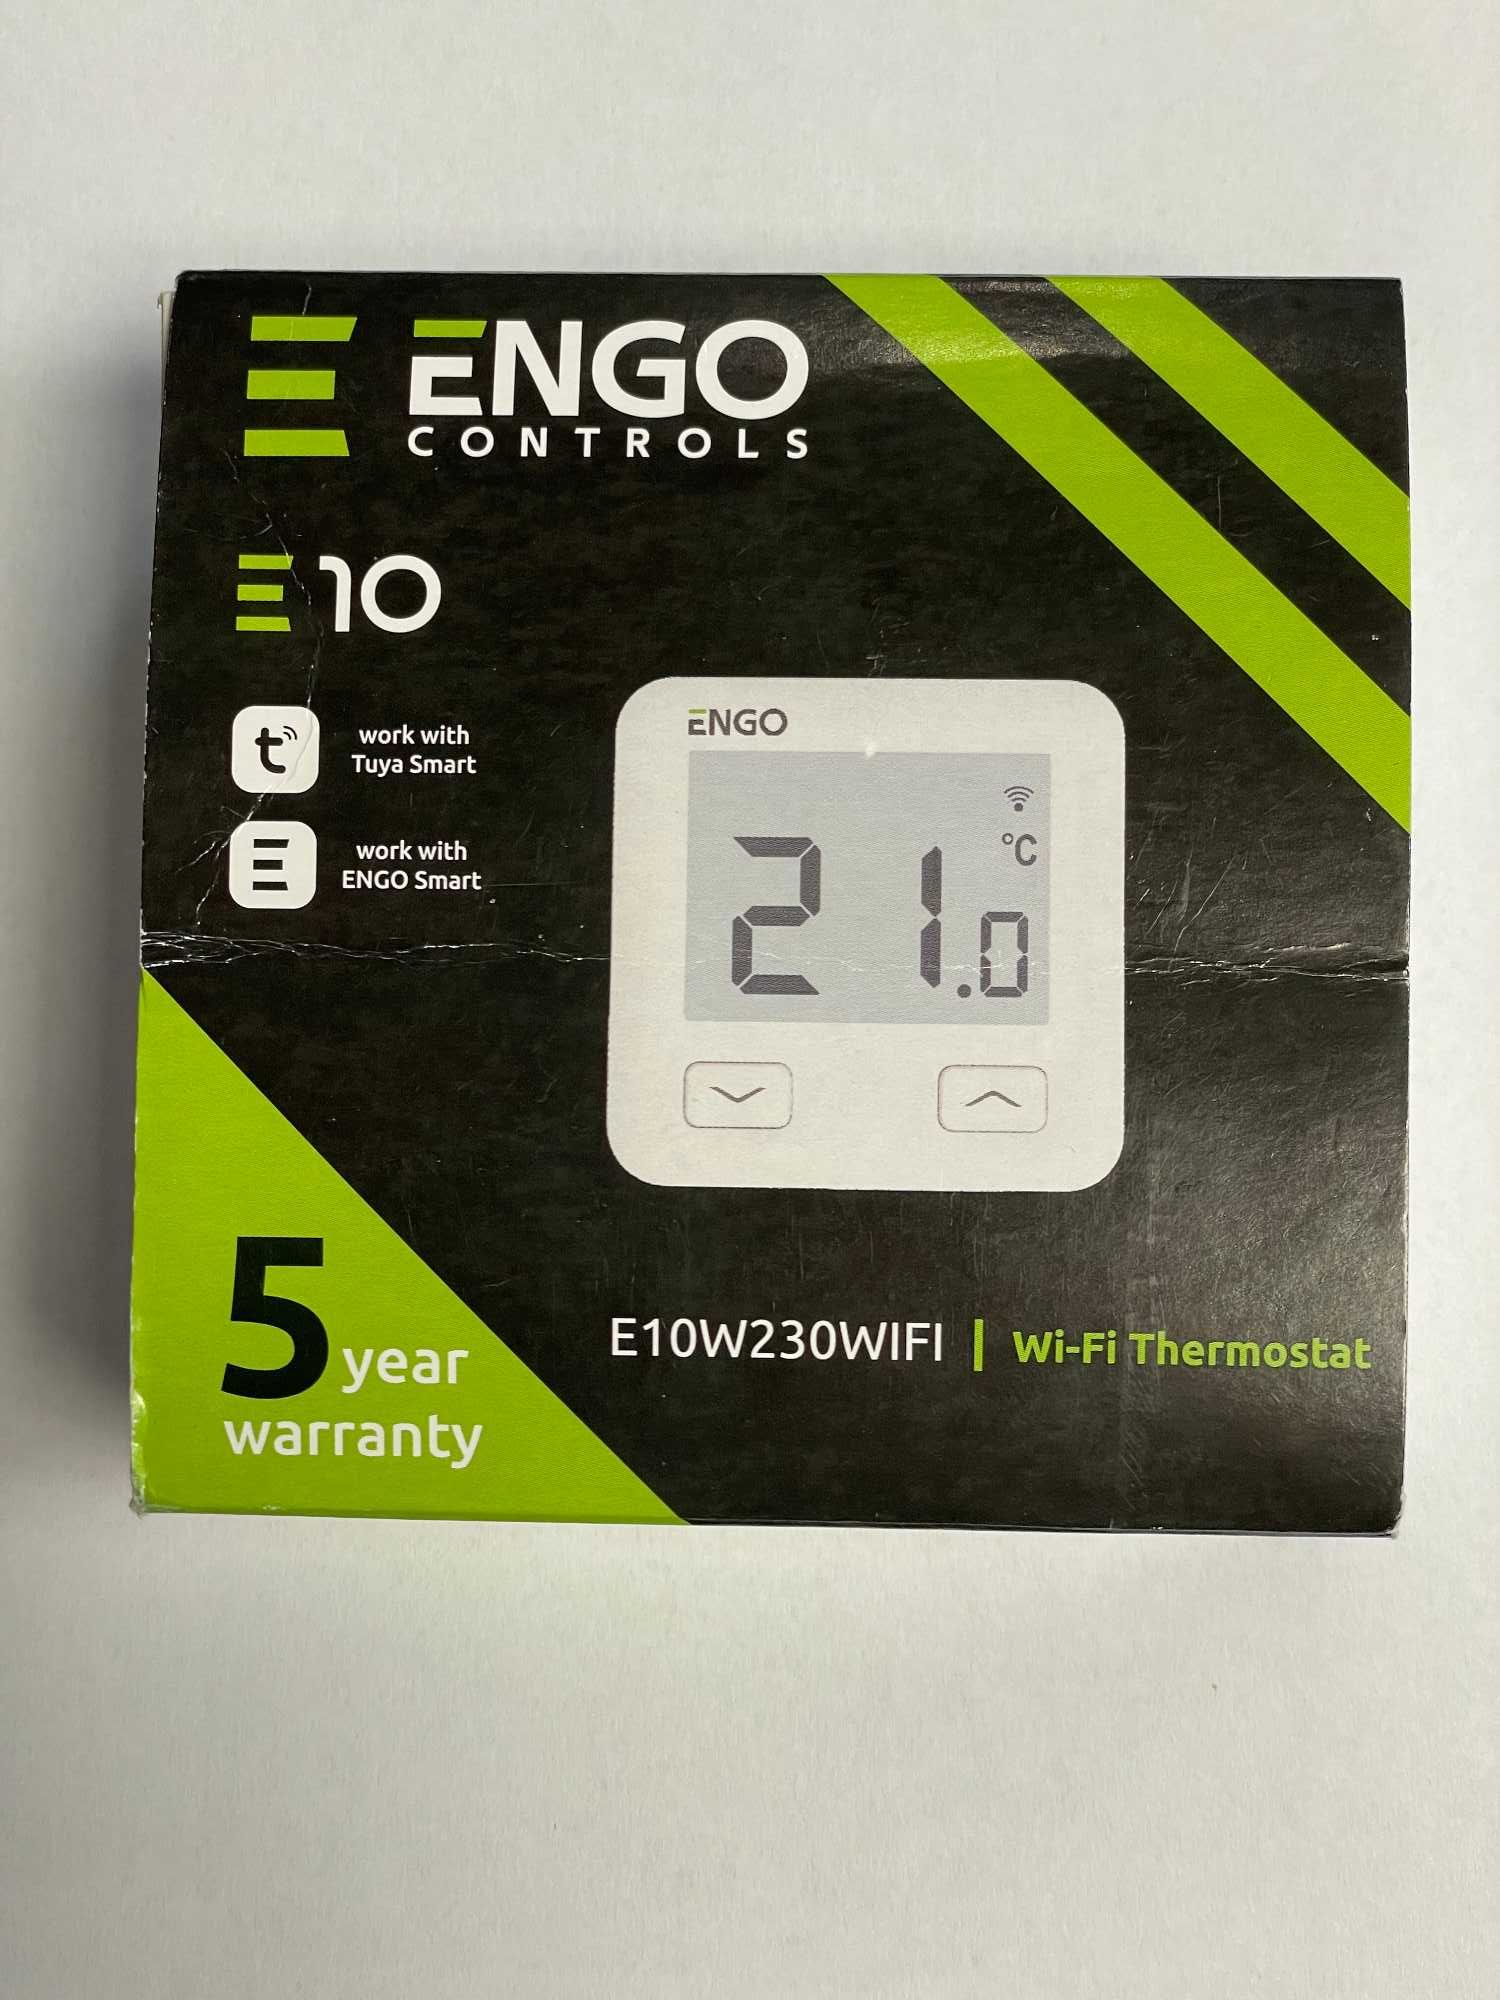 Regulator temperatury internetowy ENGO E10W230WIFI podtynkowy, biały